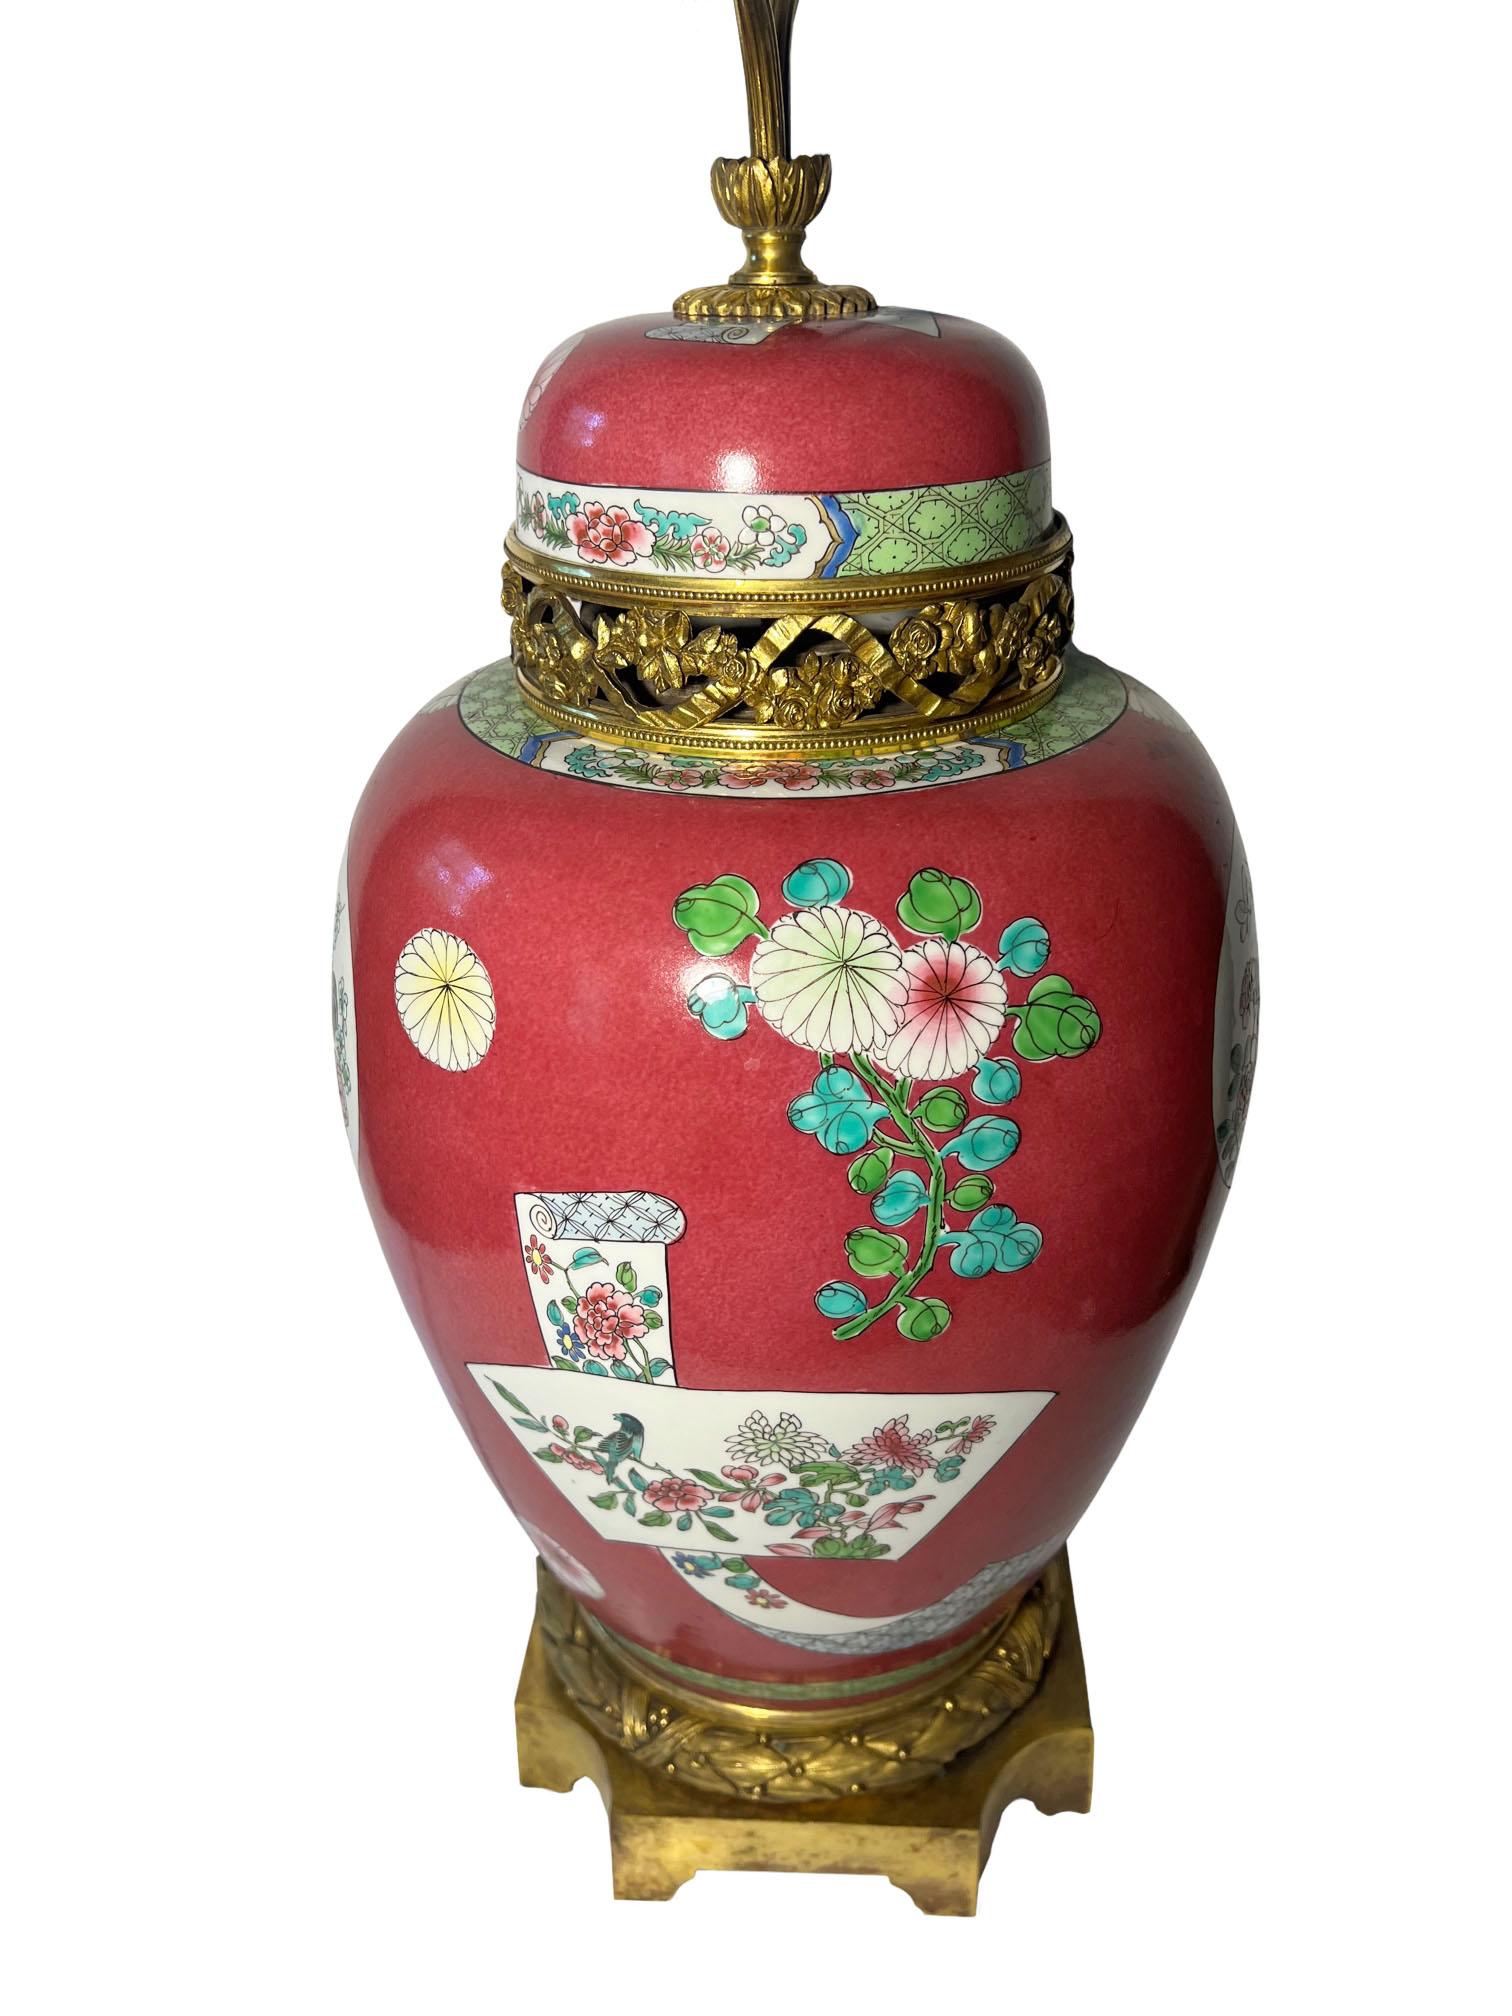 Une superbe lampe en porcelaine de la famille rose du XIXe siècle, ornée de montures en bronze doré de style Louis XVI. Avec des fleurs et des coqs. Deux prises de courant avec chaînes de traction. Le vase lui-même mesure dix-neuf pouces de haut.